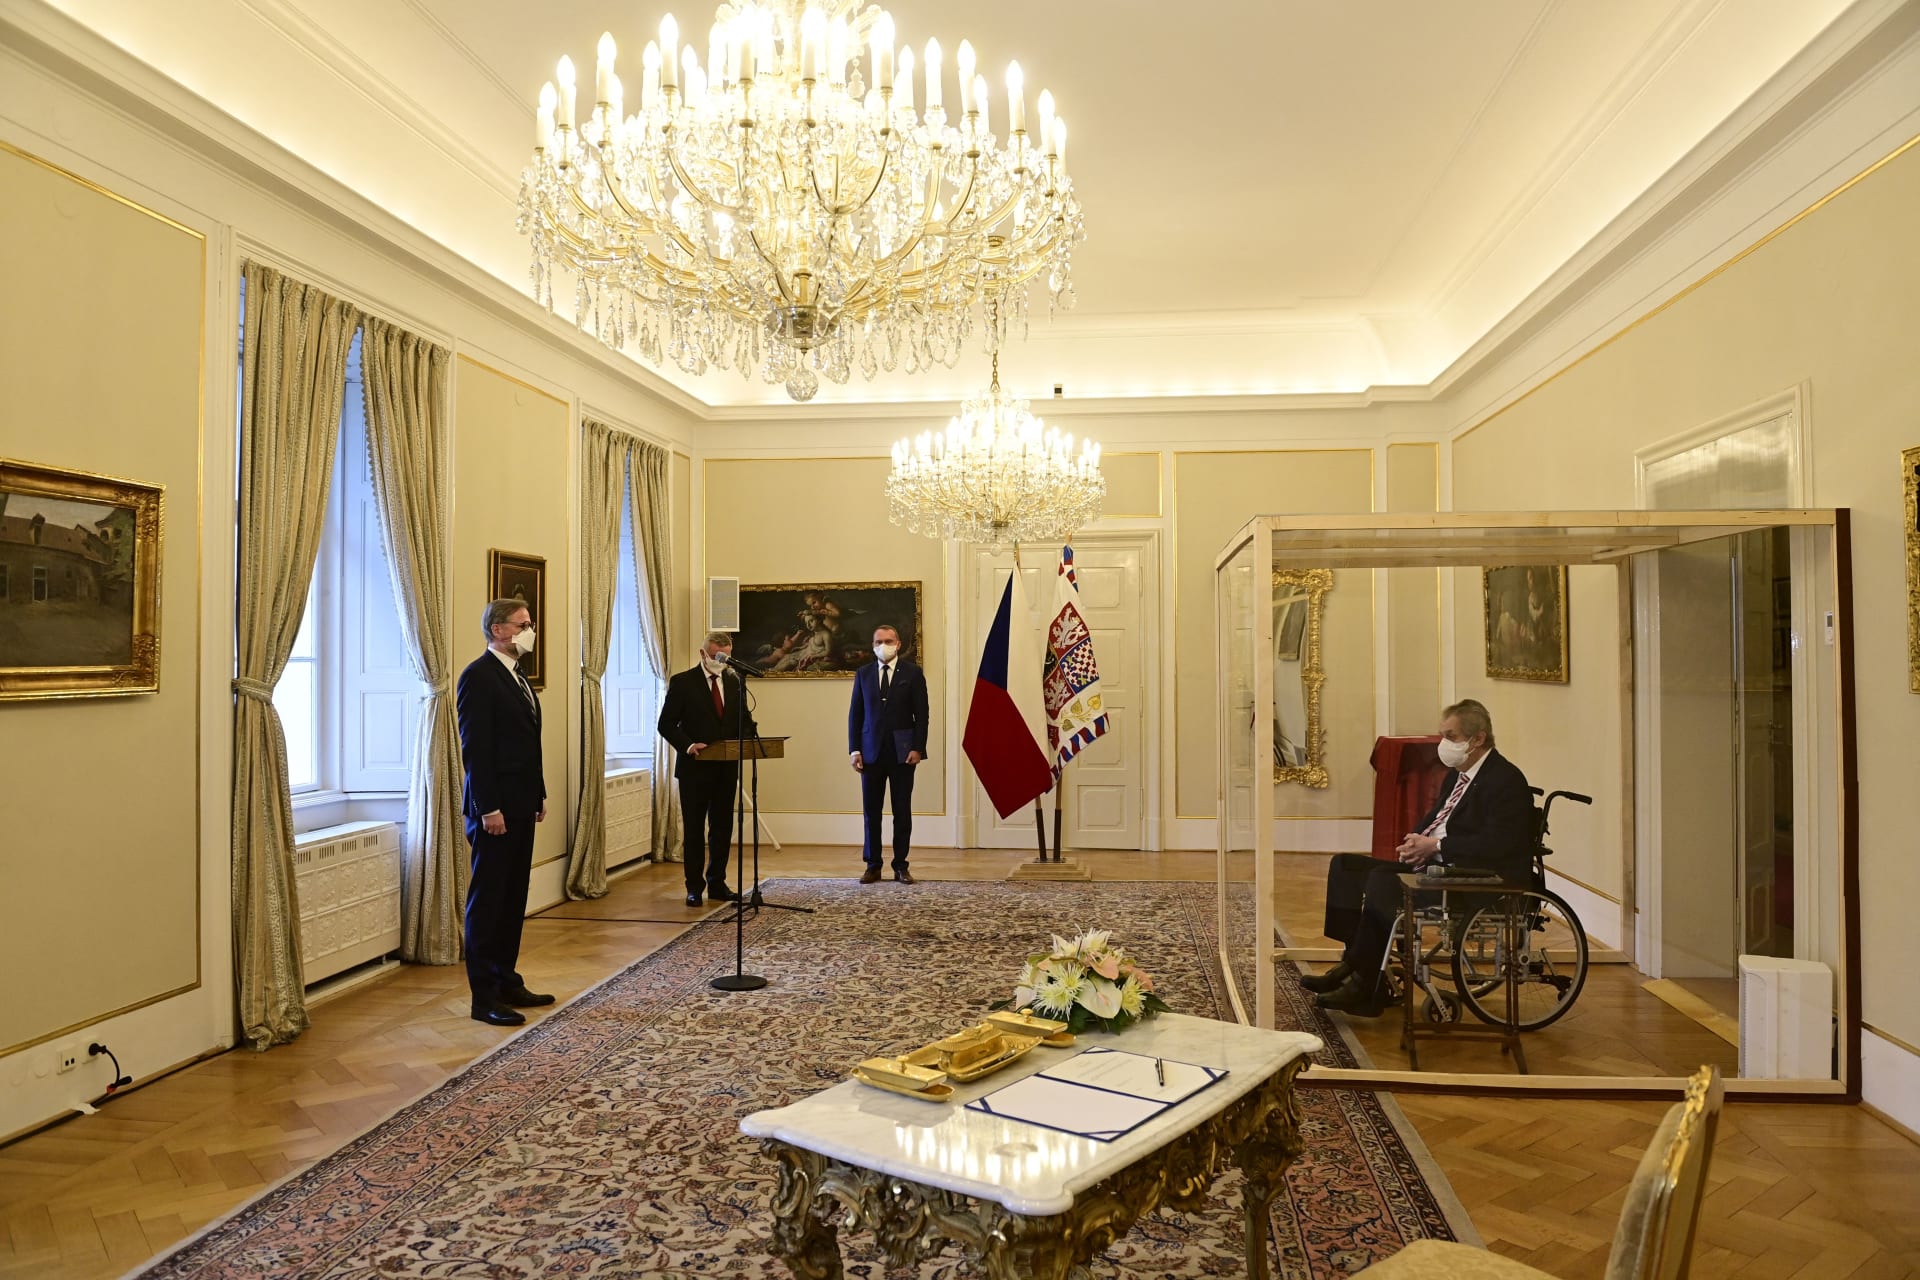 من داخل قفص زجاجي.. رئيس التشيك يعين رئيس وزراء جديد لبلاده